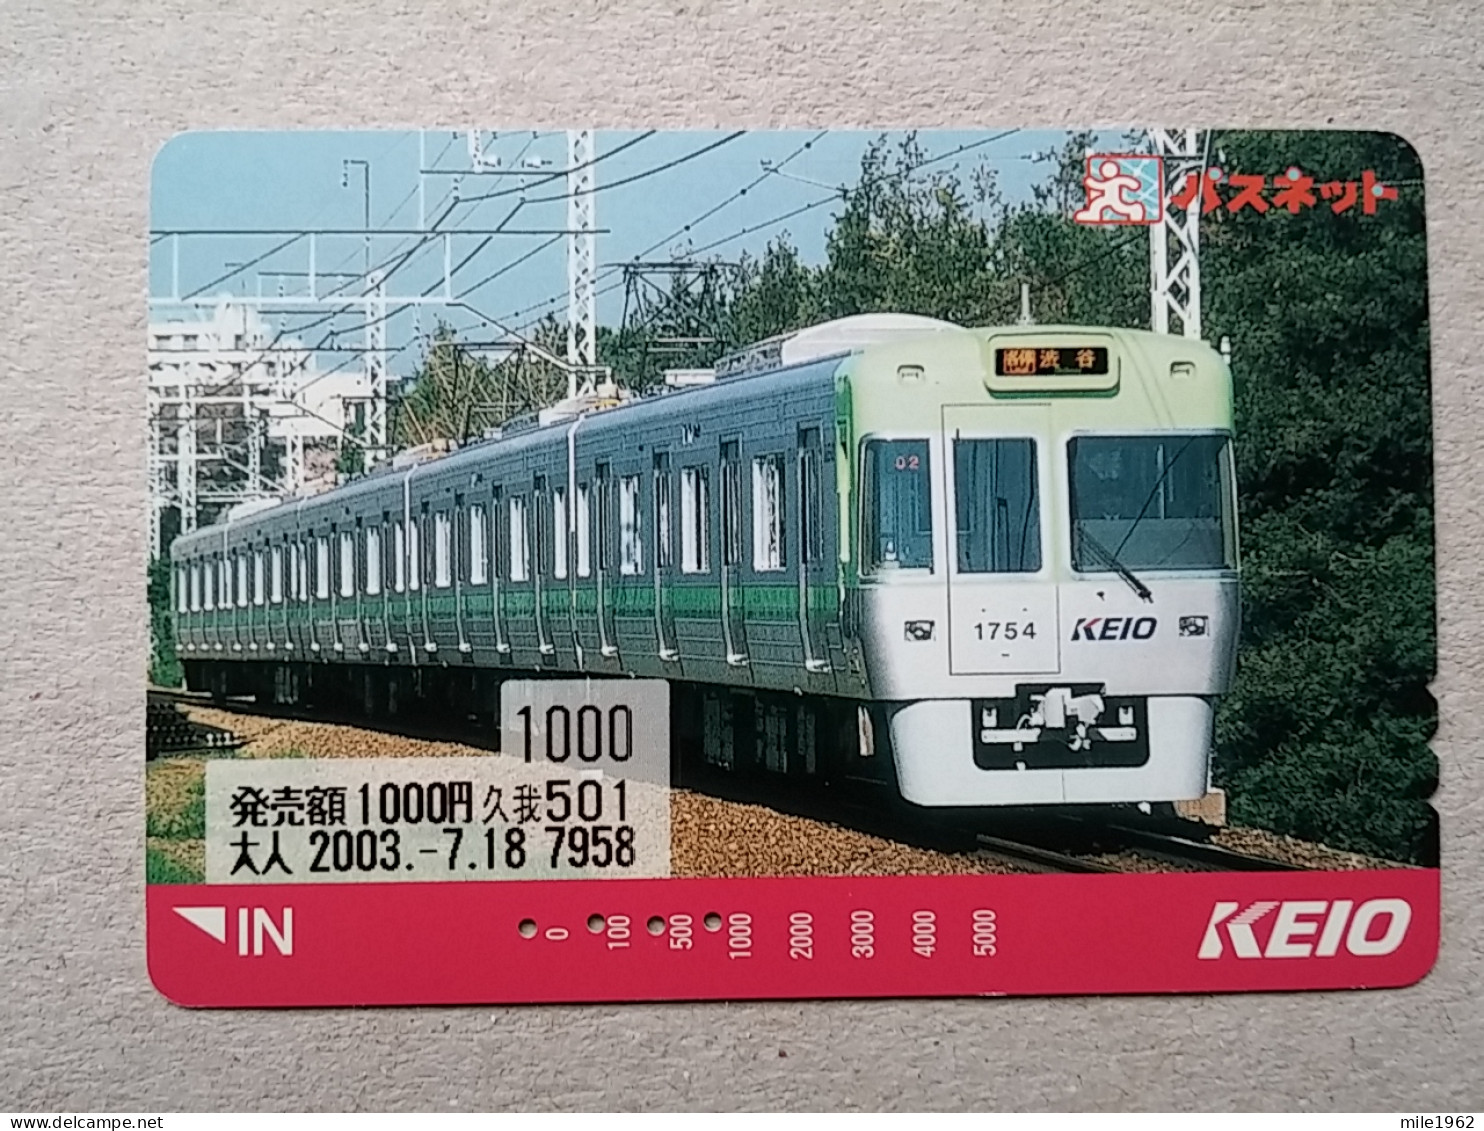 T-614 - JAPAN, Japon, Nipon, Carte Prepayee, Prepaid Card, CARD, RAILWAY, TRAIN, CHEMIN DE FER - Trains